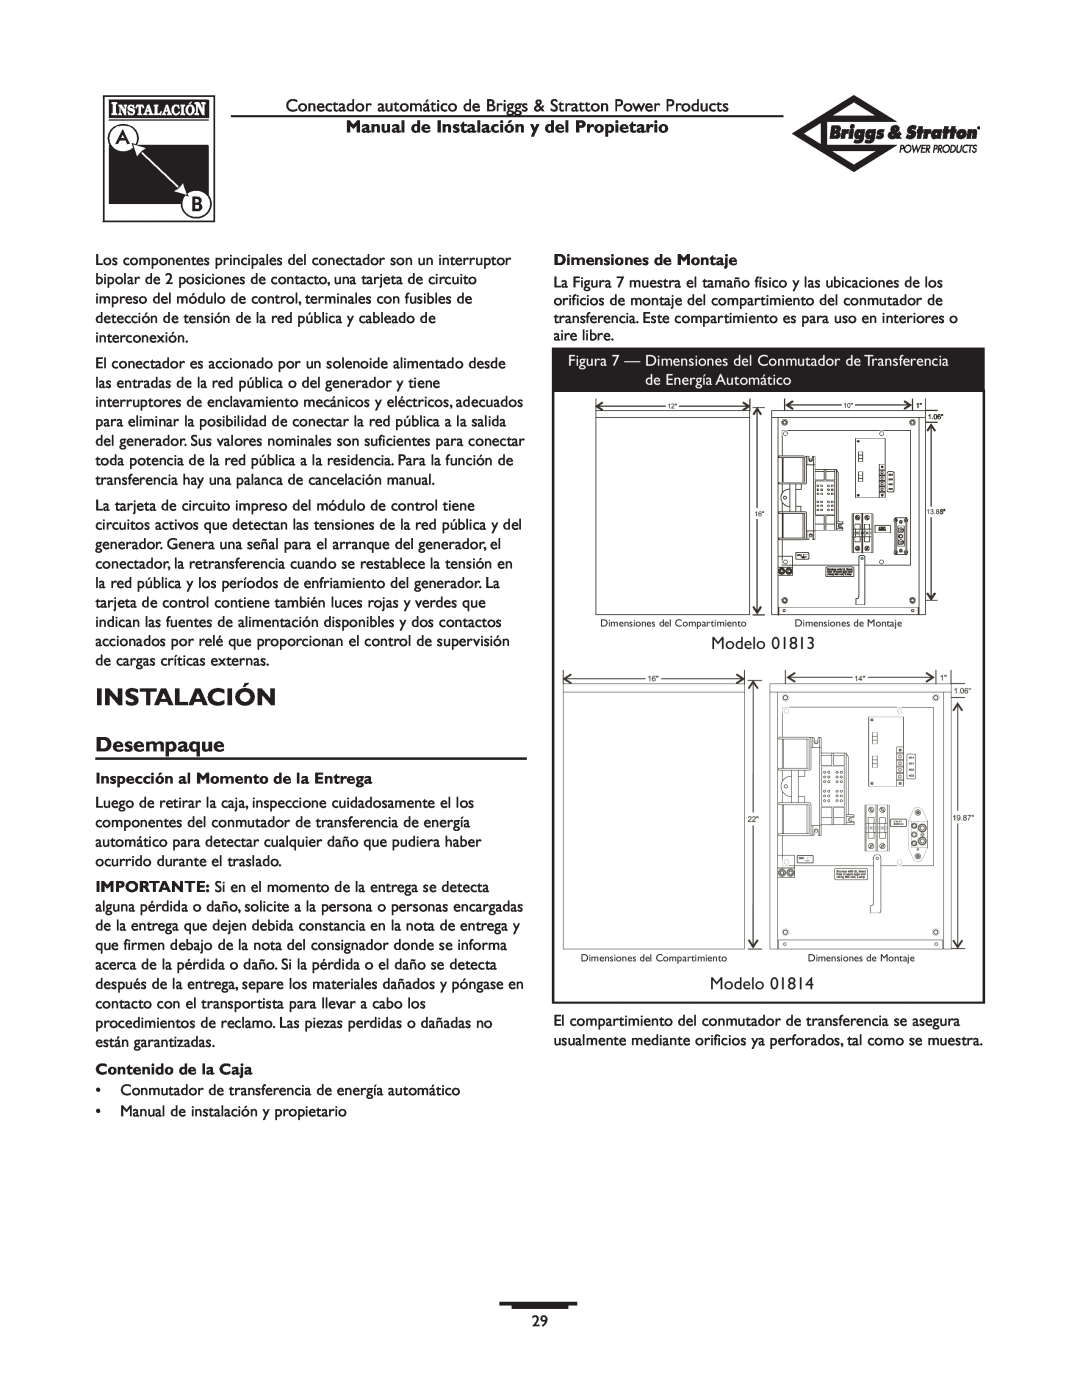 Briggs & Stratton 01813-0, 01814-0 Desempaque, Manual de Instalación y del Propietario, Dimensiones de Montaje 